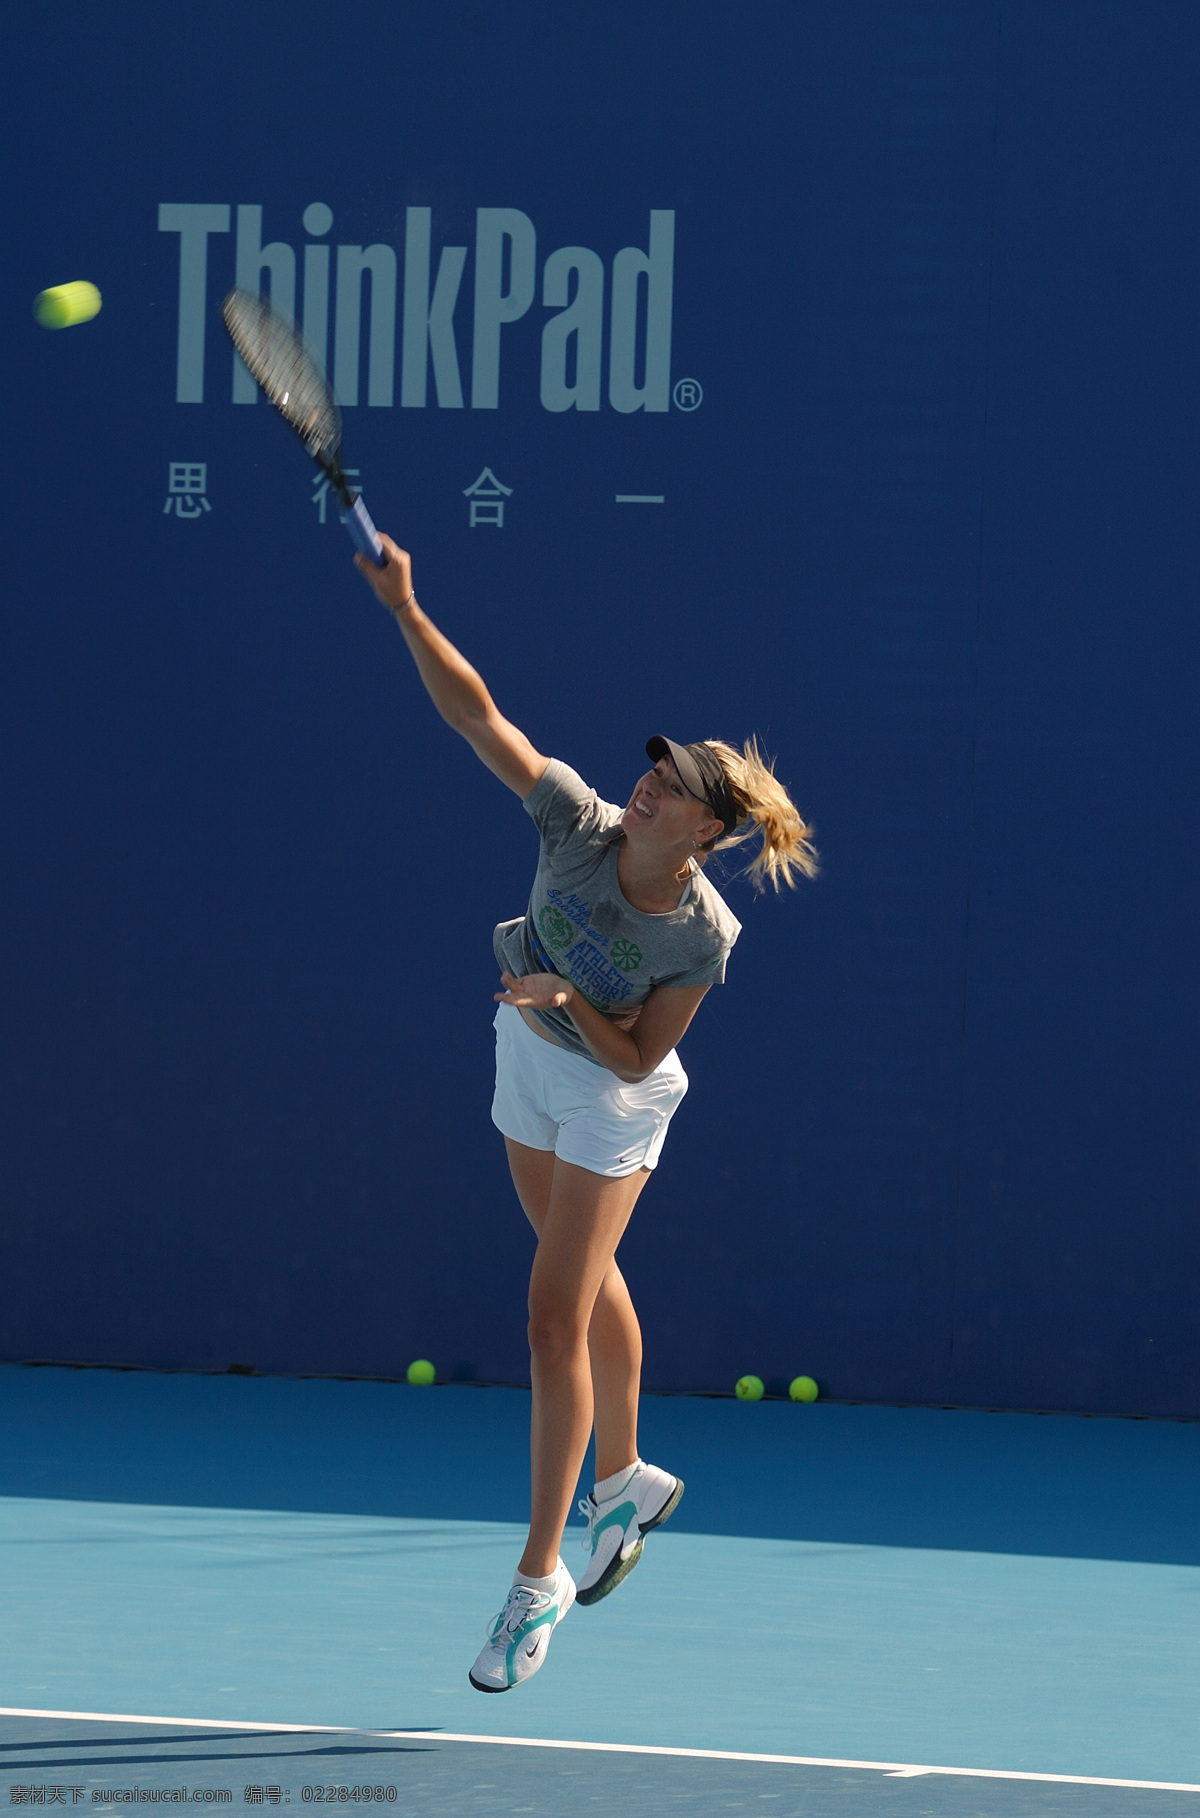 莎拉波娃 中网 玛利亚 sharapova 中国 网球 公开赛 明星偶像 人物图库